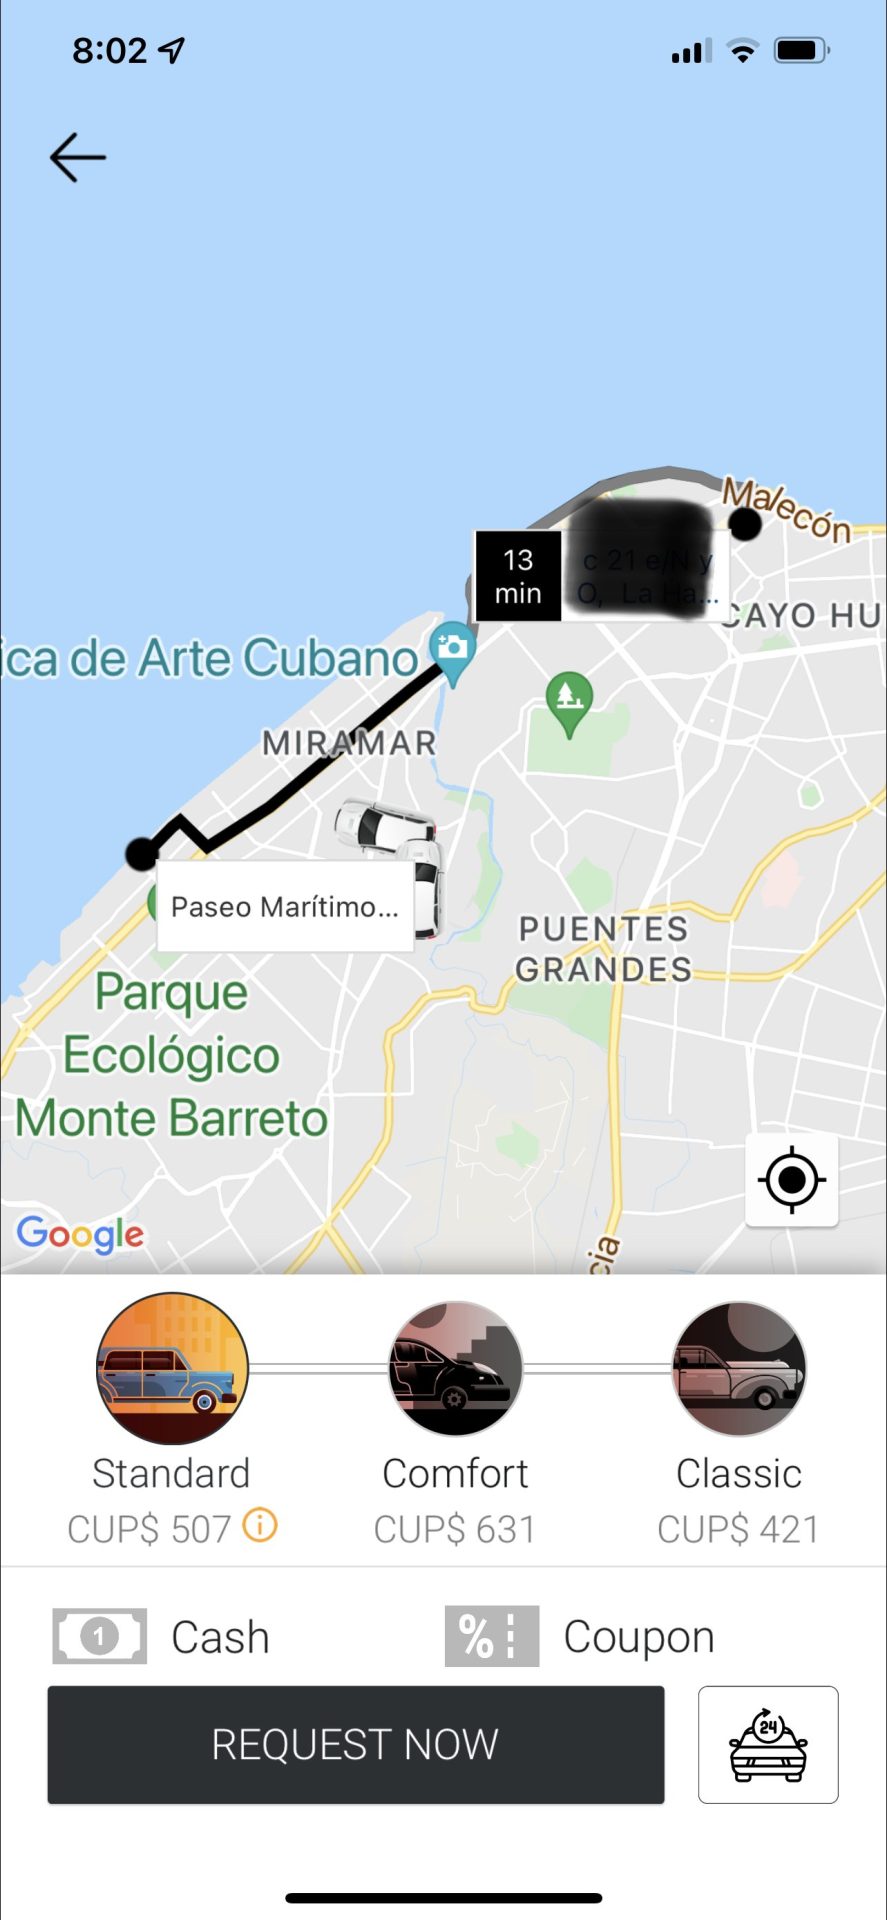 Bajanda - Cuba ride sharing app - the uber of Cuba